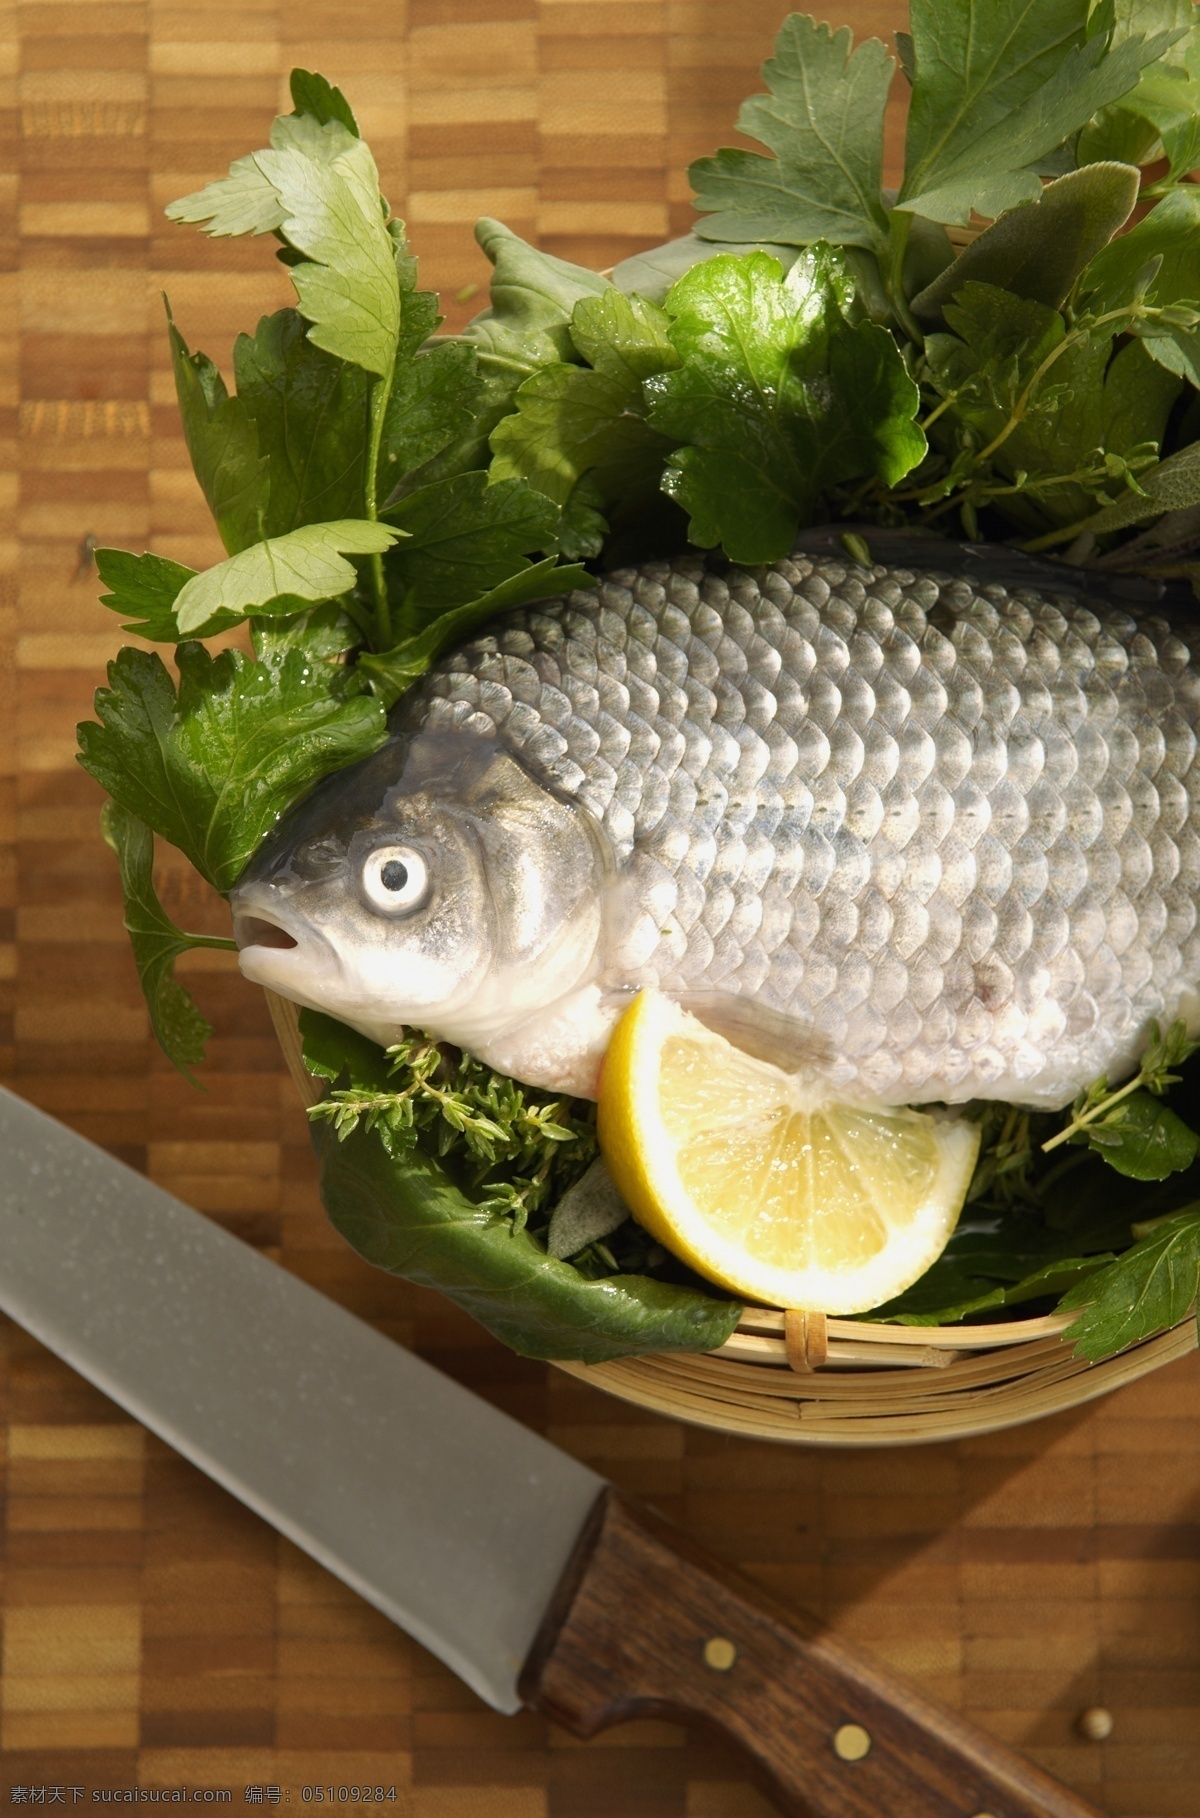 水产品 摄影图片 鱼肉 鱼 食材 食物原料 餐饮美食 美食 蒸笼 刀 香菜叶 食材原料